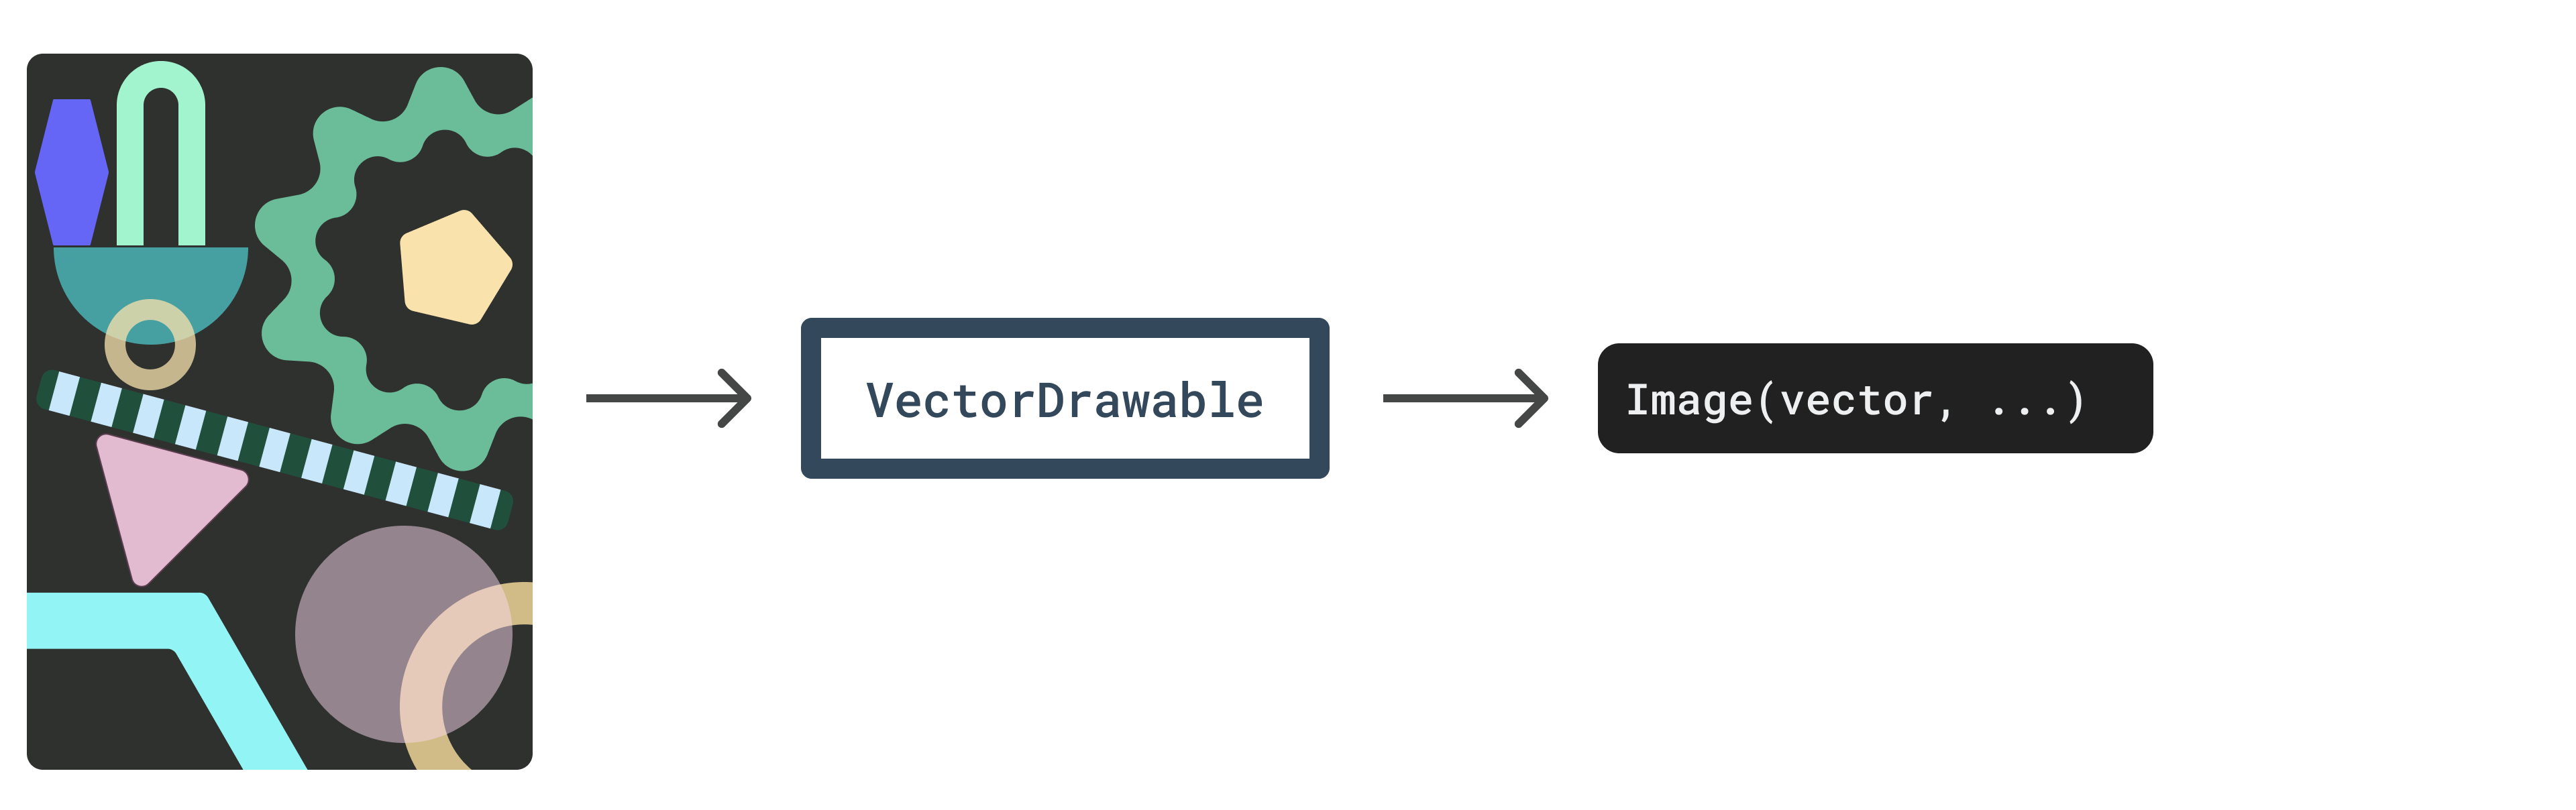 Diagram - Lapisan vektor ke VectorDrawable ke Gambar